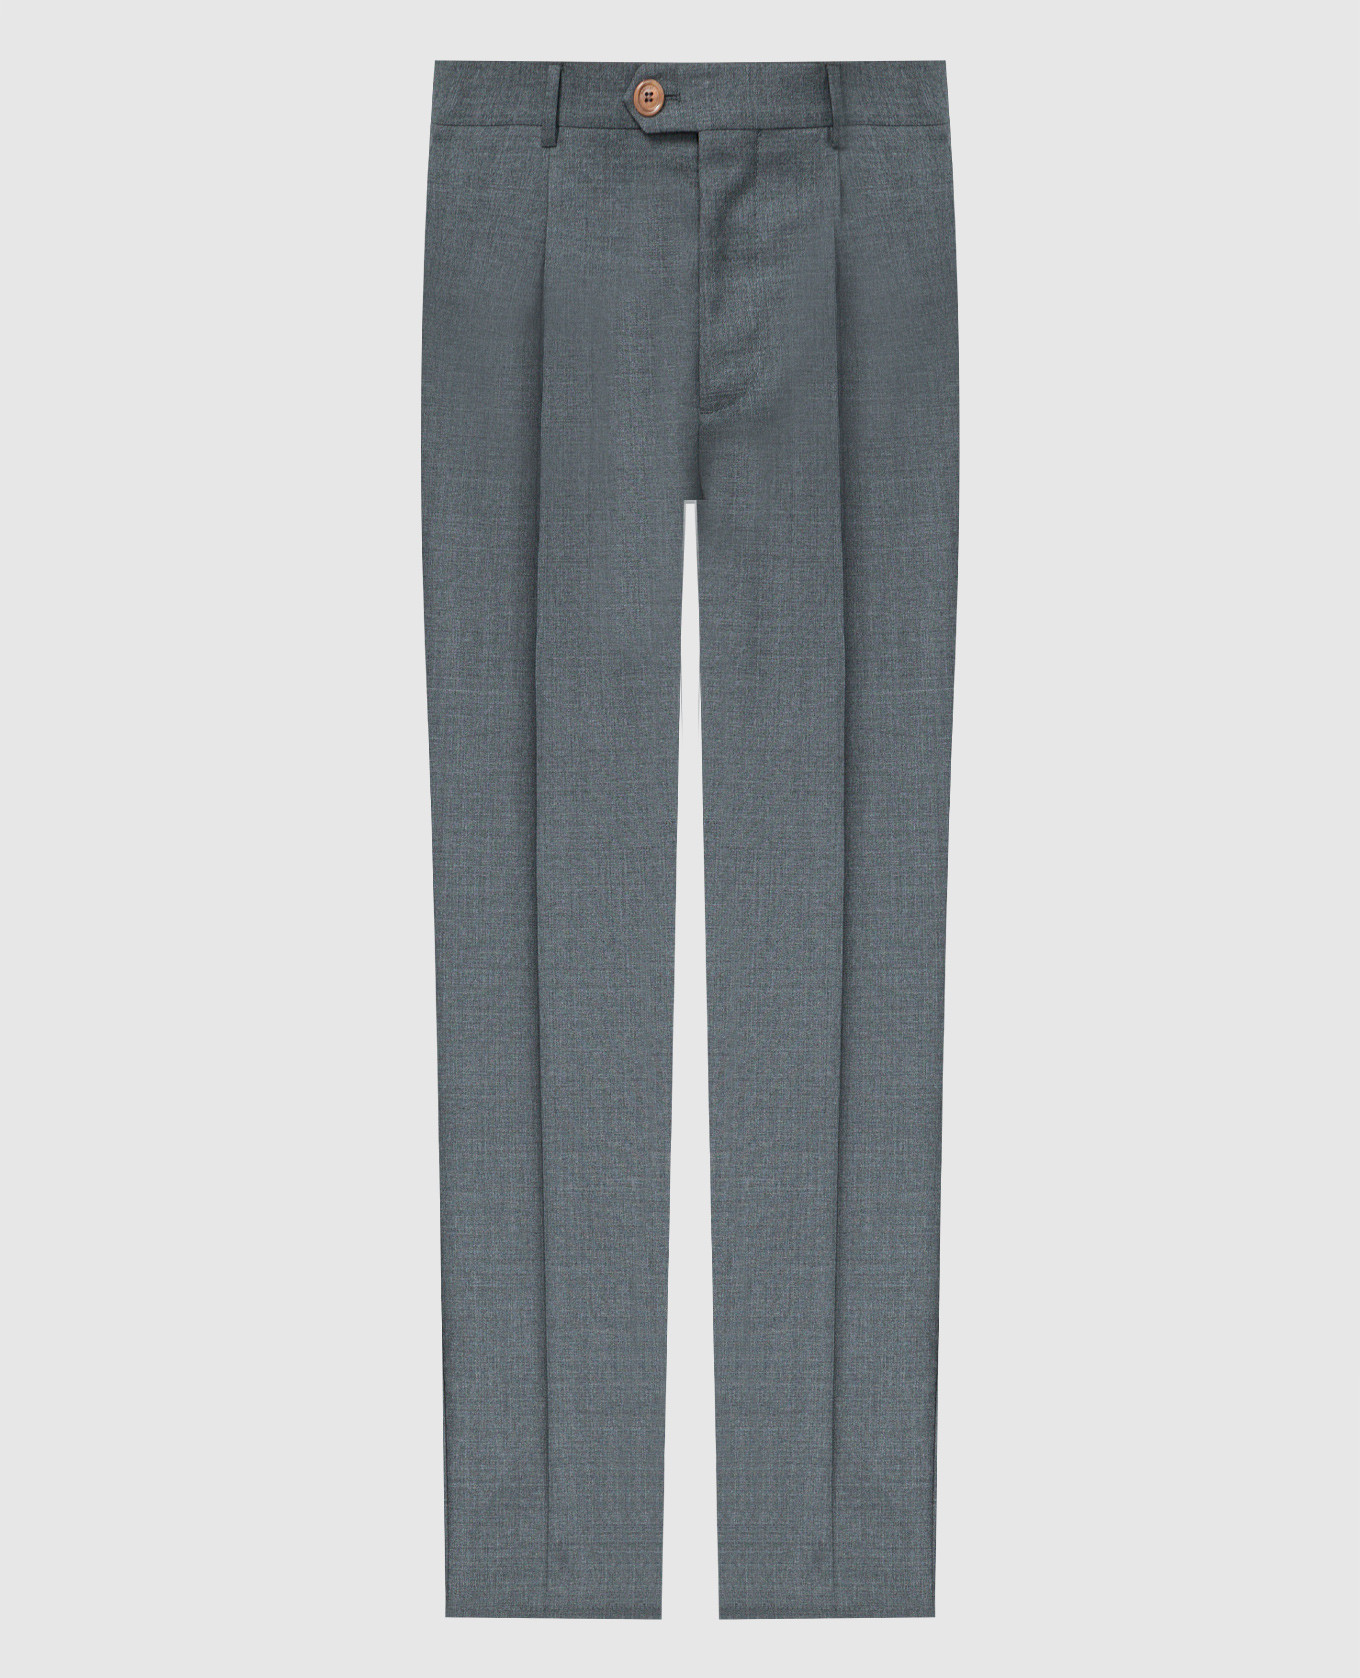 Pantalón clásico de lana gris.